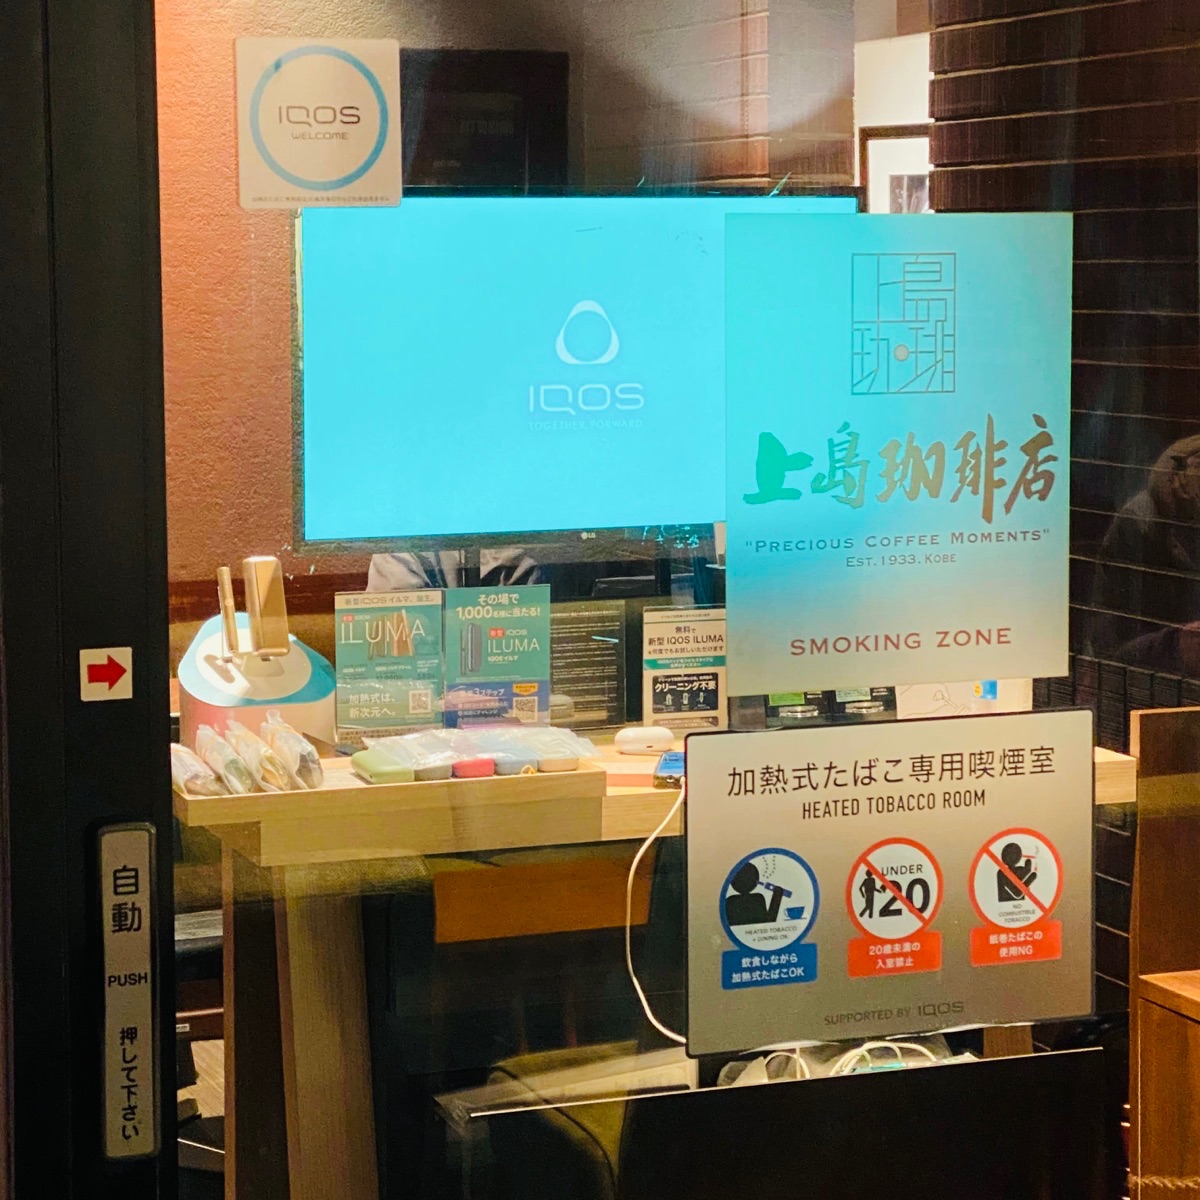 上島珈琲店の加熱式たばこ専用喫煙室。これまでの喫煙室は変わりつつある。